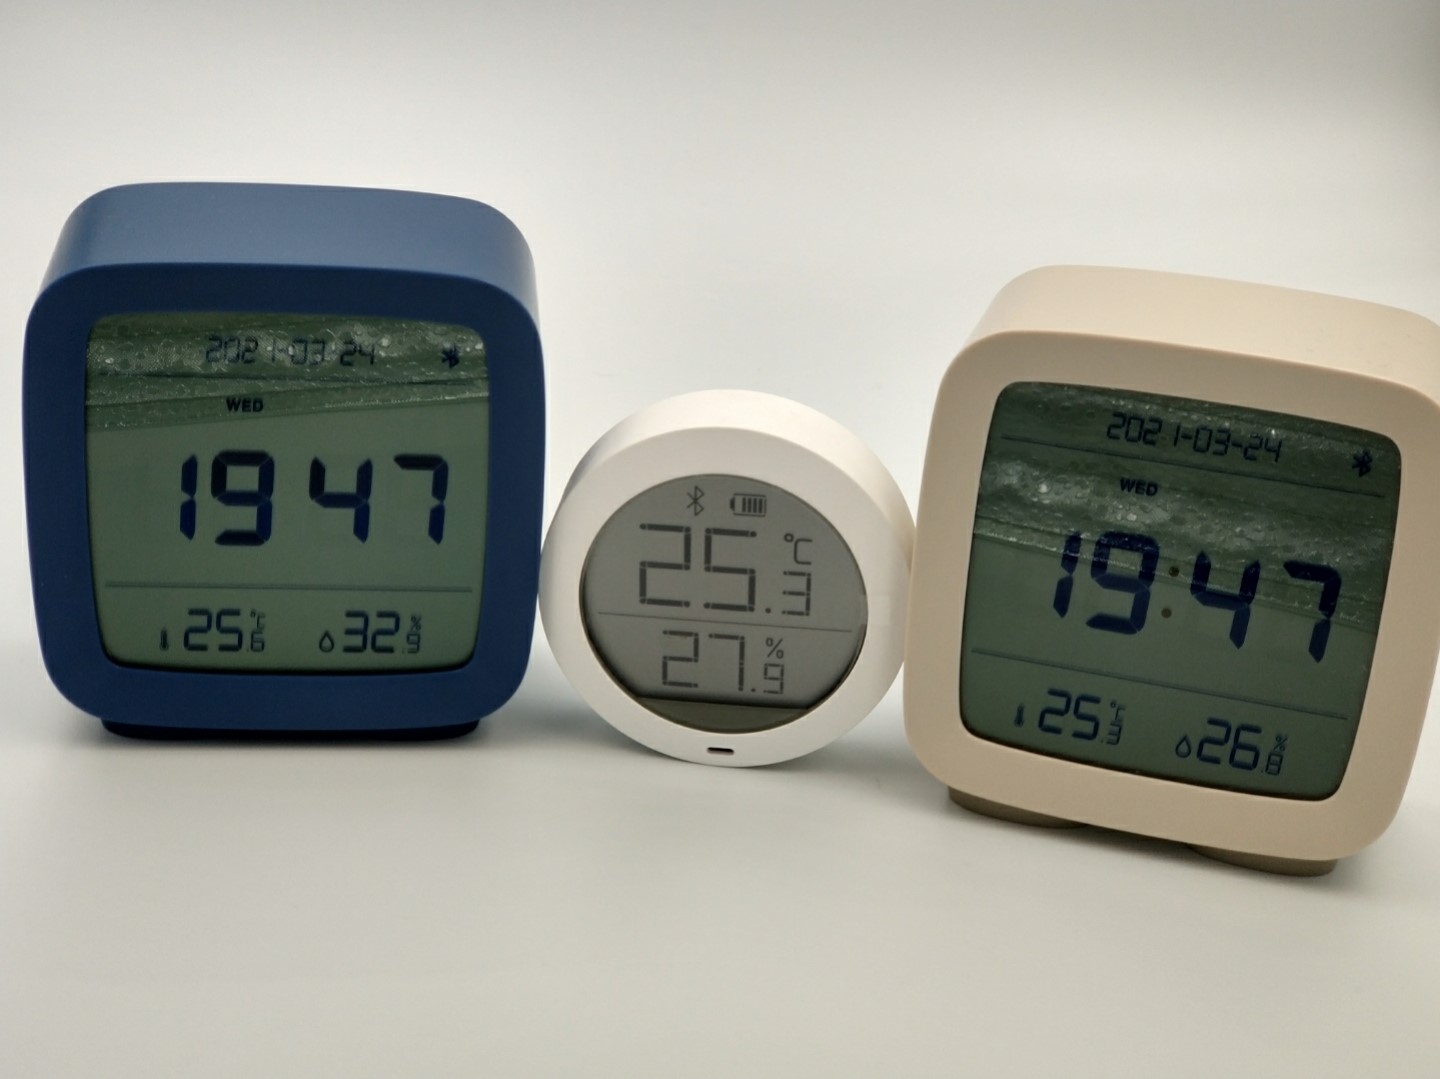 Будильник от тюриной. Цифровые часы-будильник Qingping Bluetooth cgc1. Будильник к 802 f фосф. Будильник от грабителей. Часы будильник мини с показанием температуры.